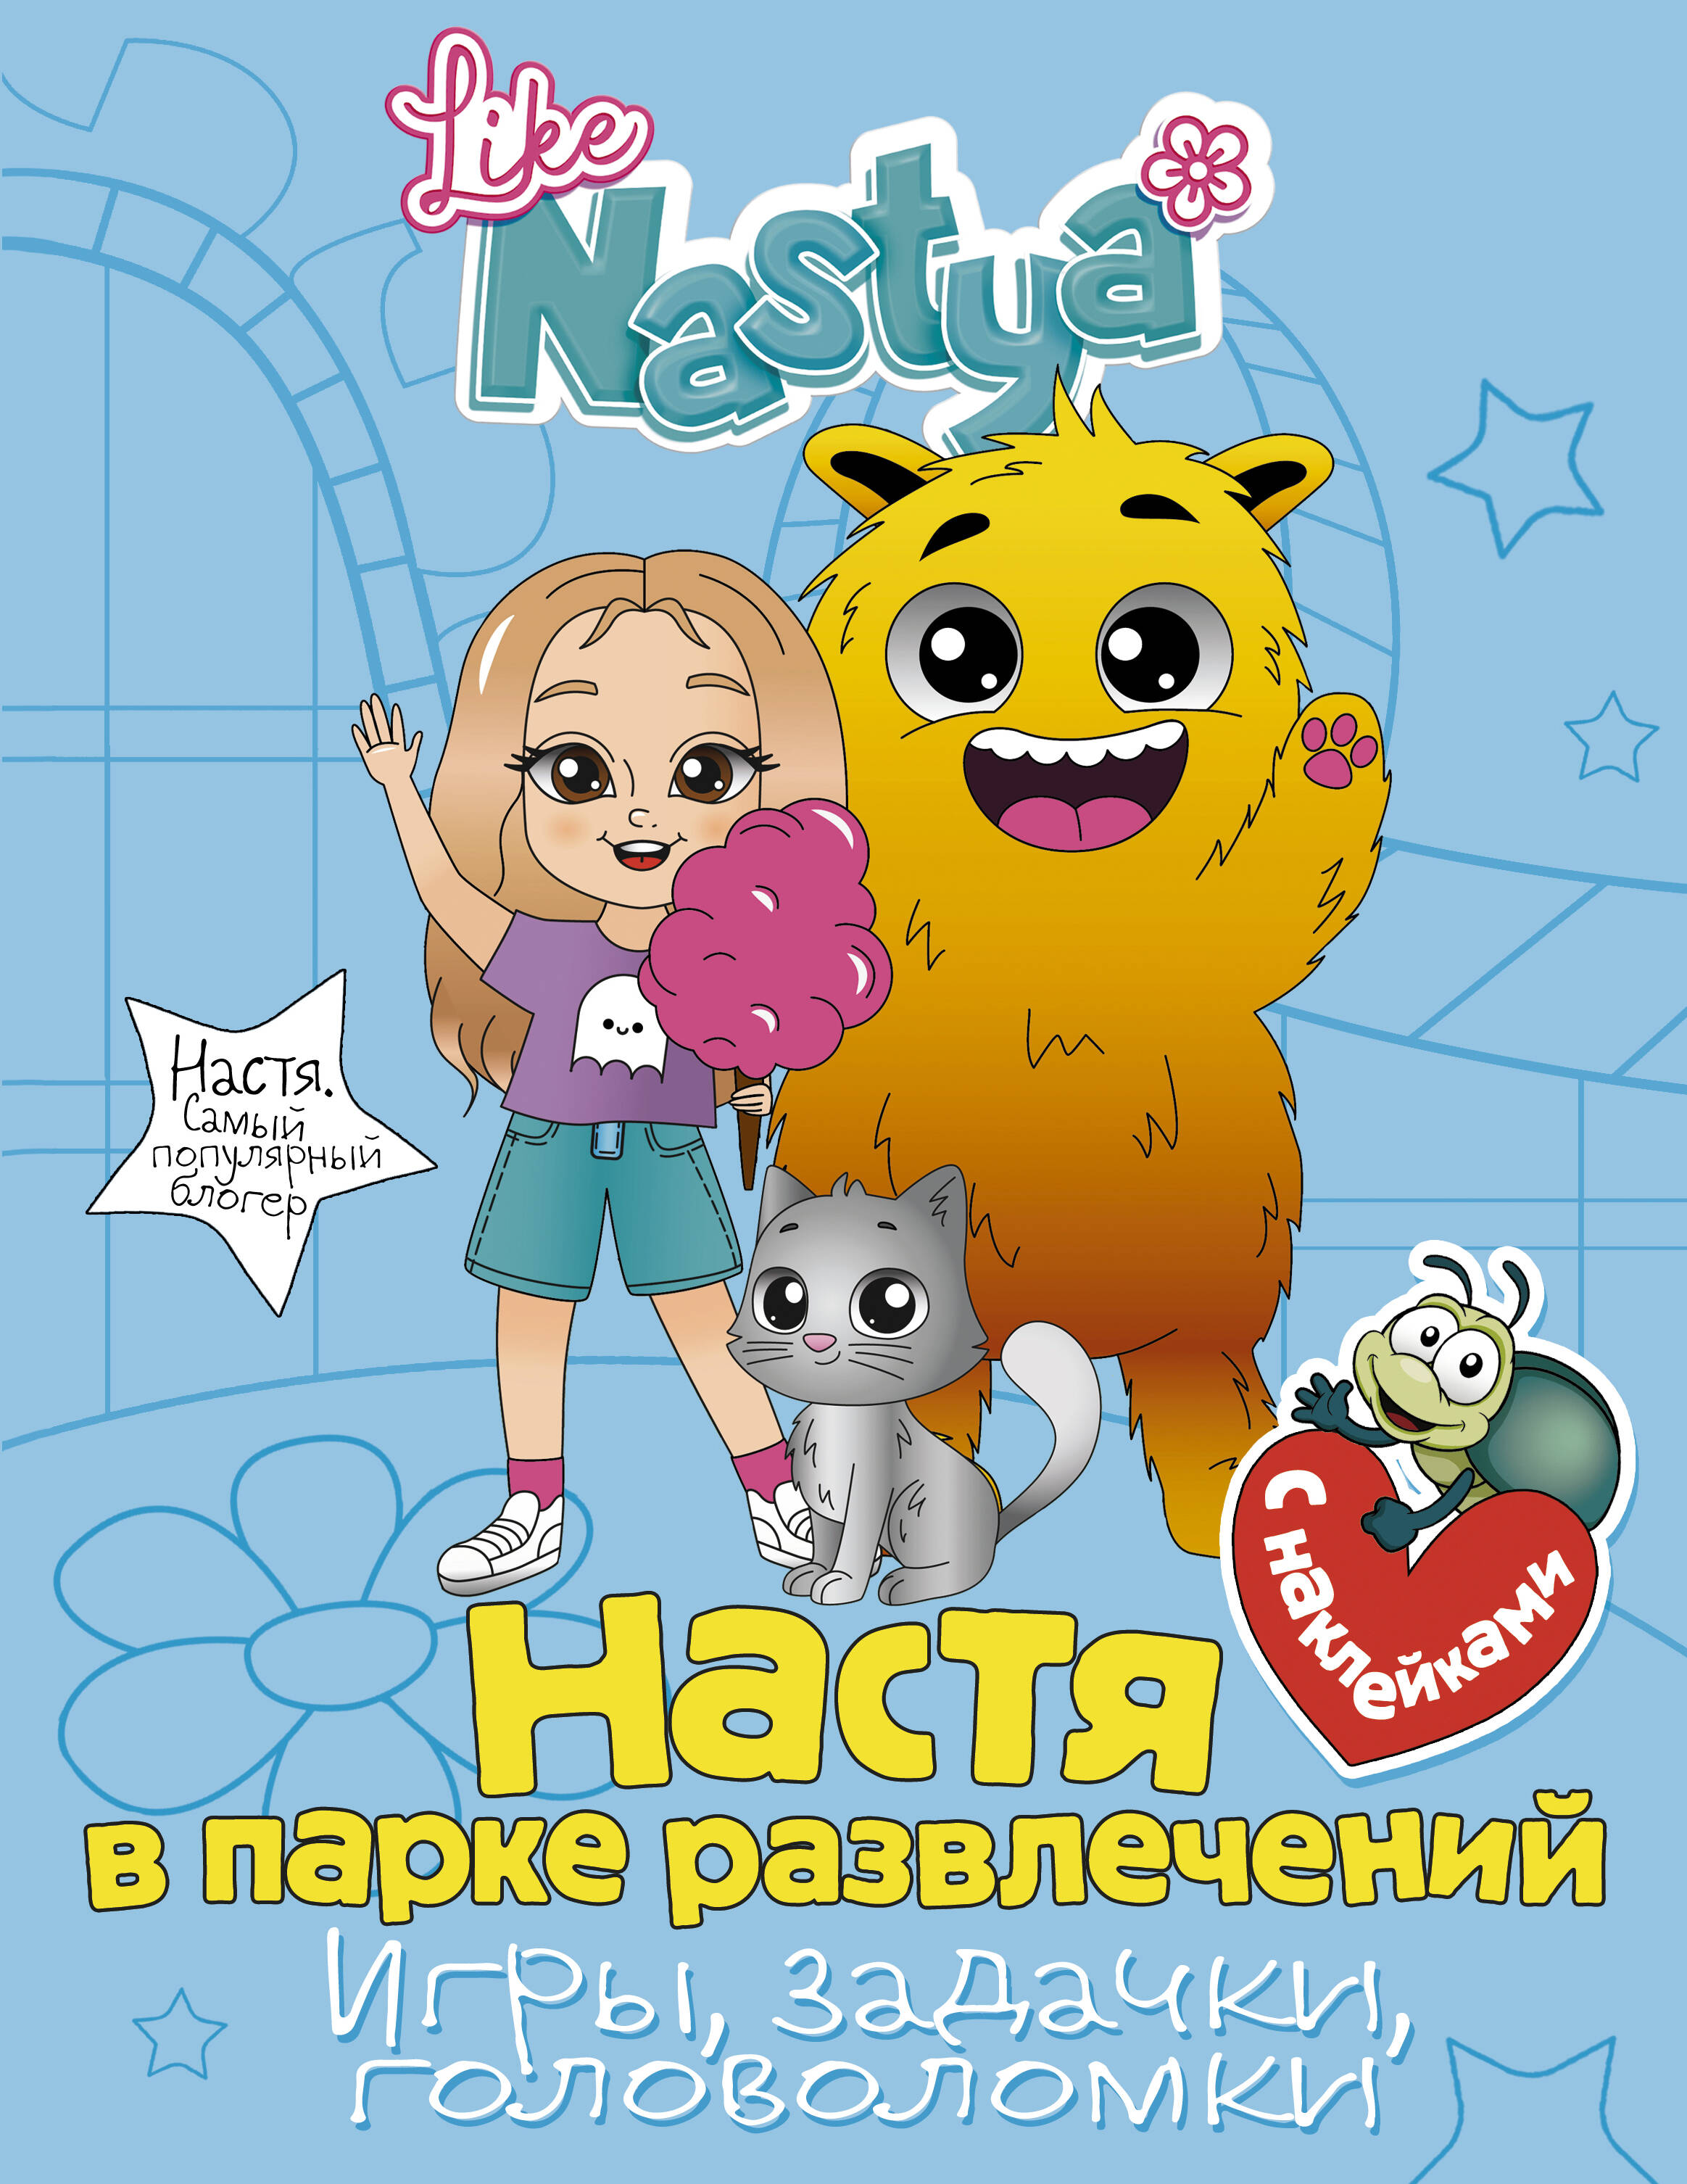 Nastya Like Настя в парке развлечений (игры, задачки, головоломки) фотографии